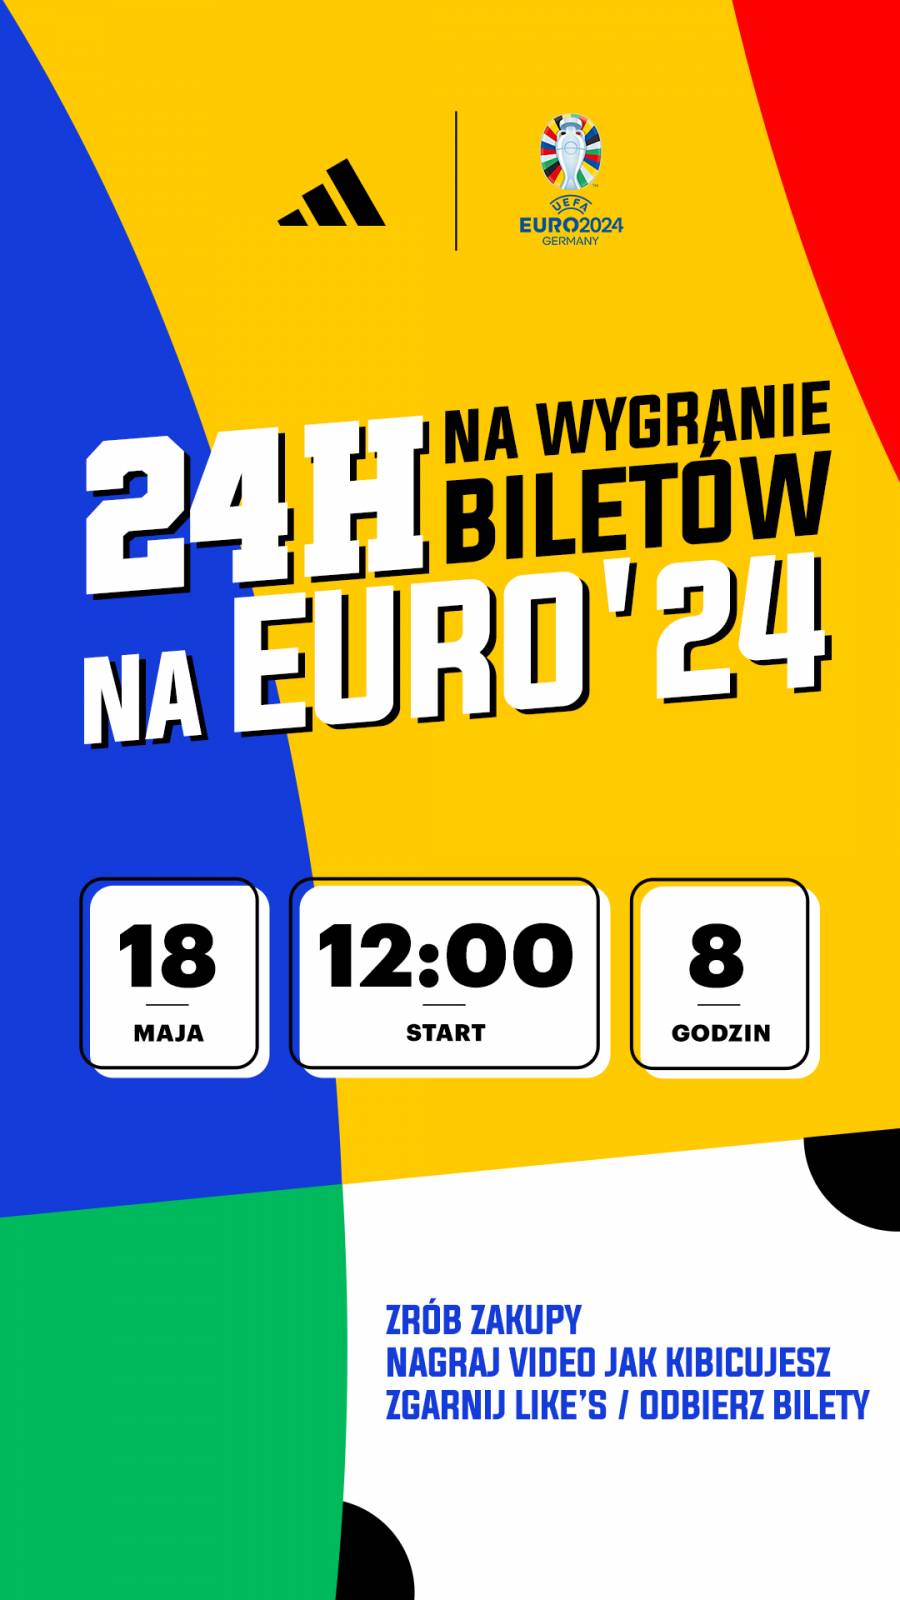 Zgarnij bilety na ćwierćfinał EURO 2024!>